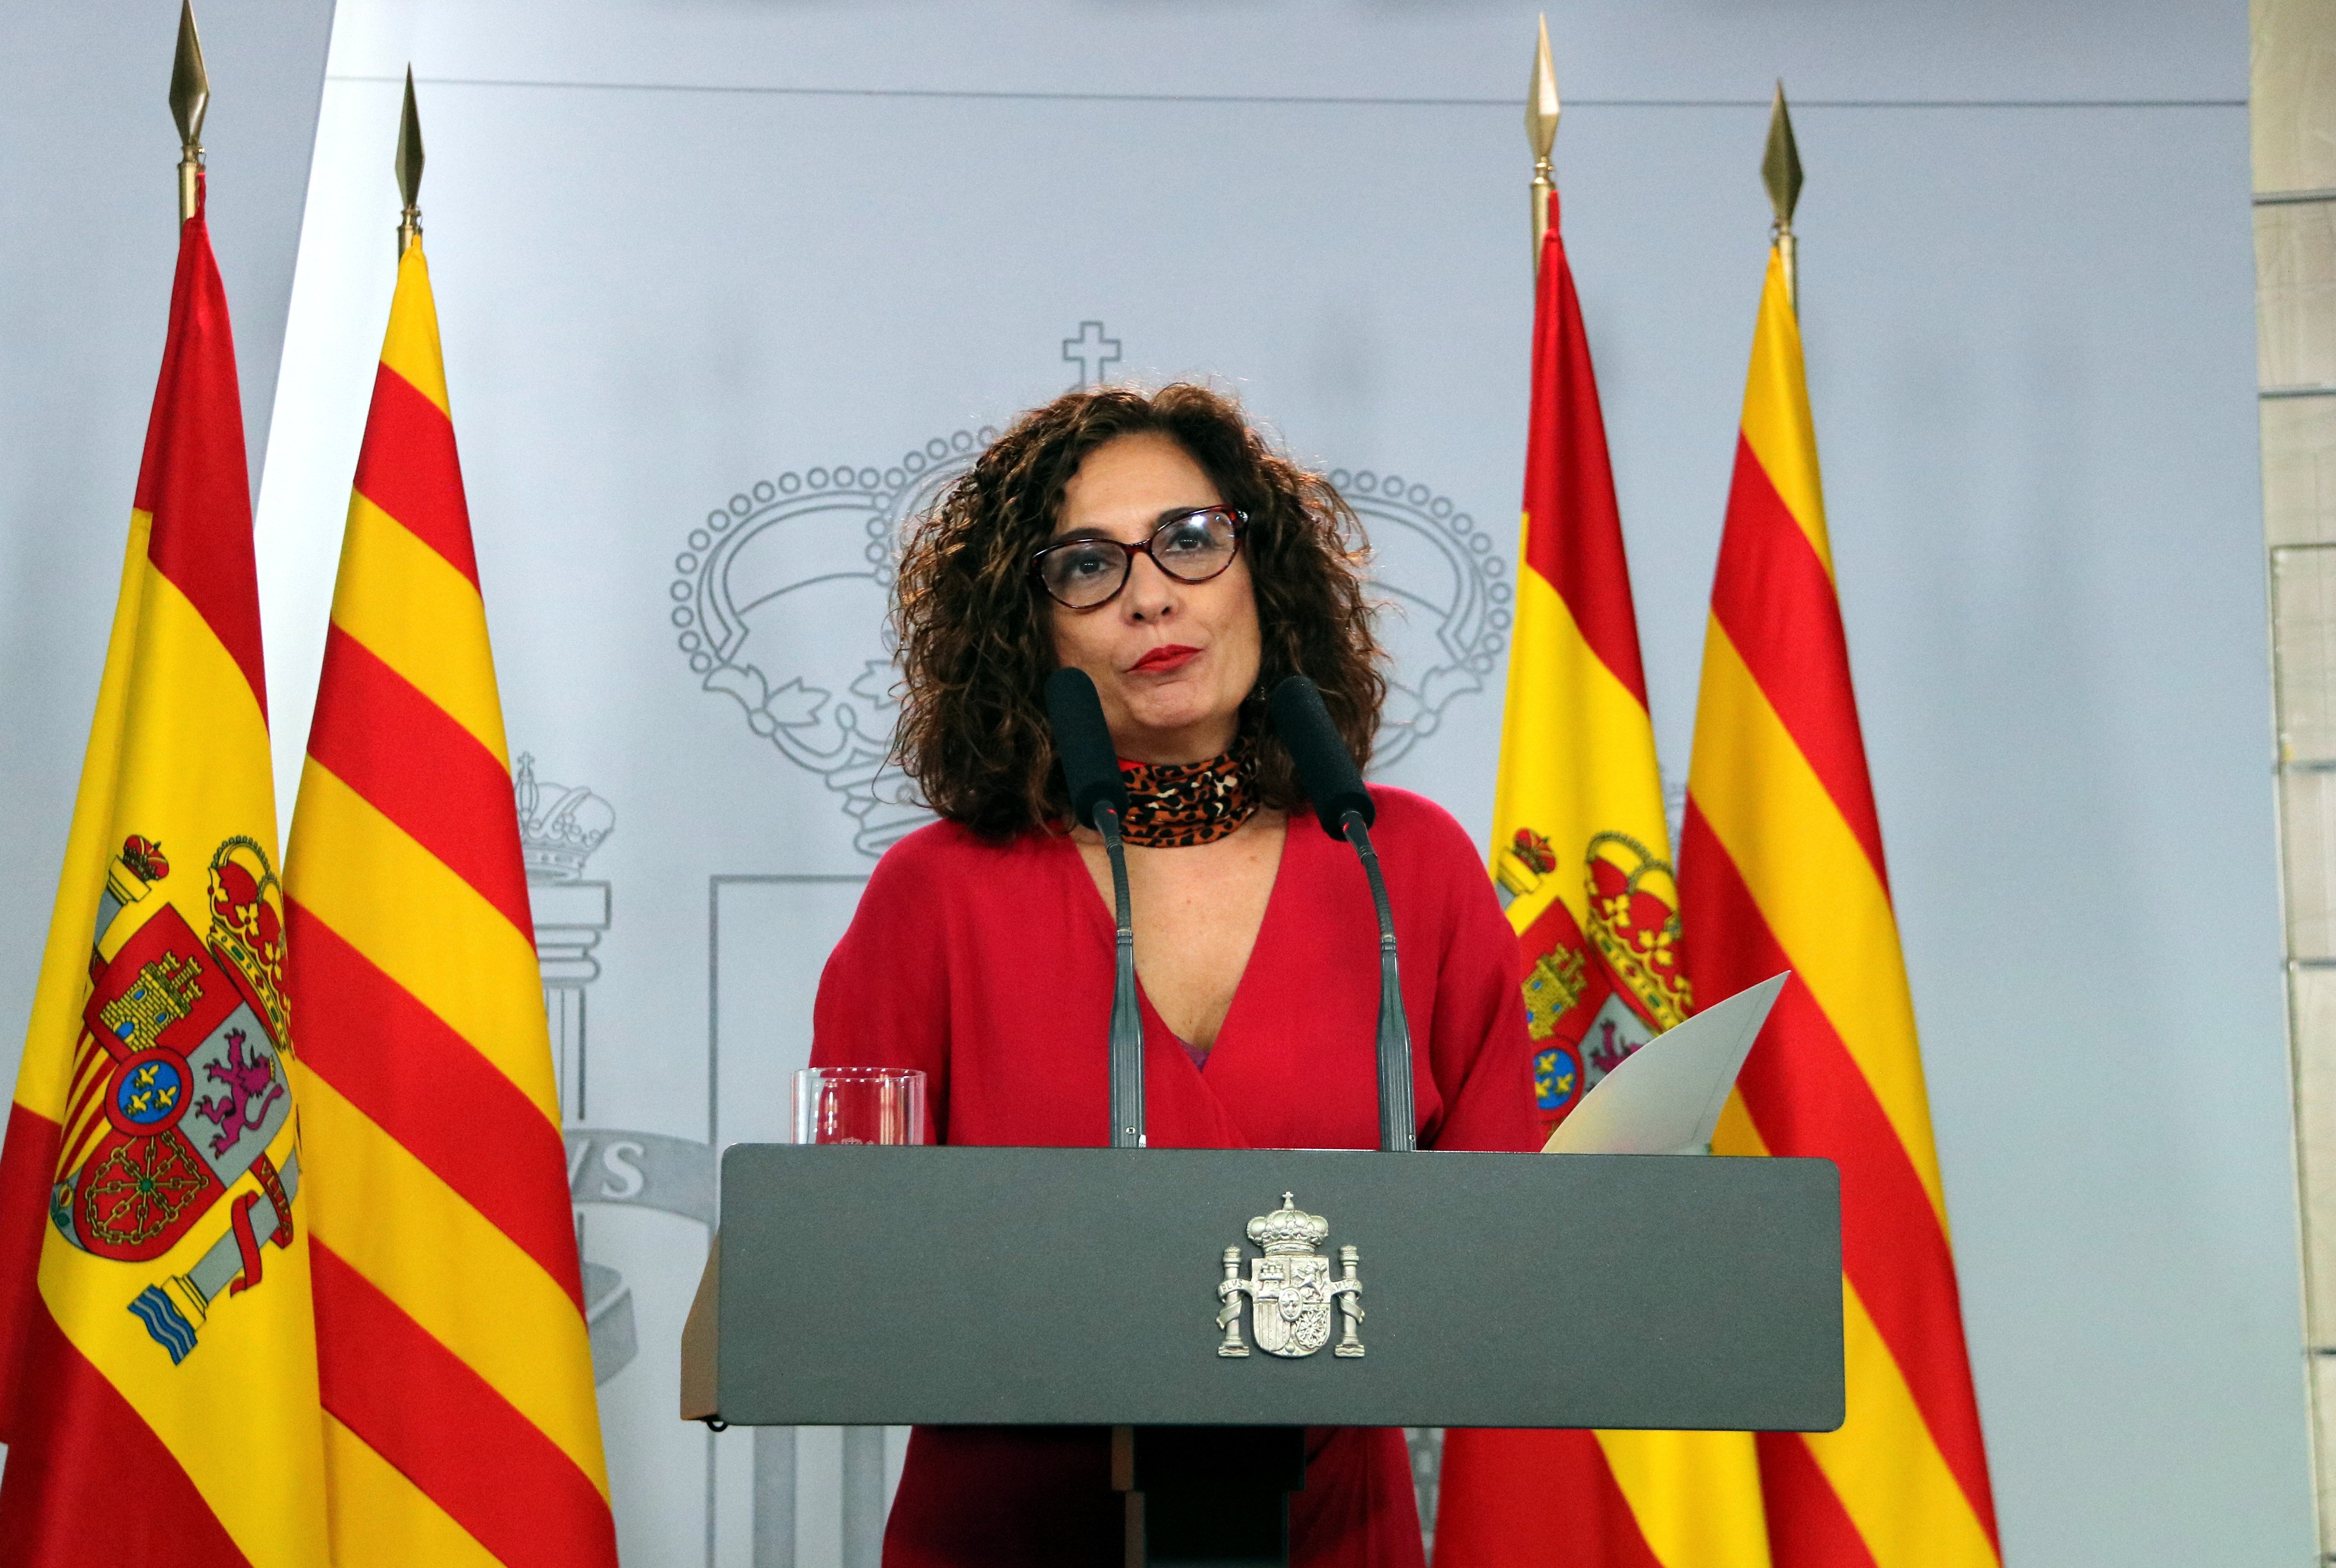 El govern espanyol rebutja l’autodeterminació i reclama "fórmules imaginatives"